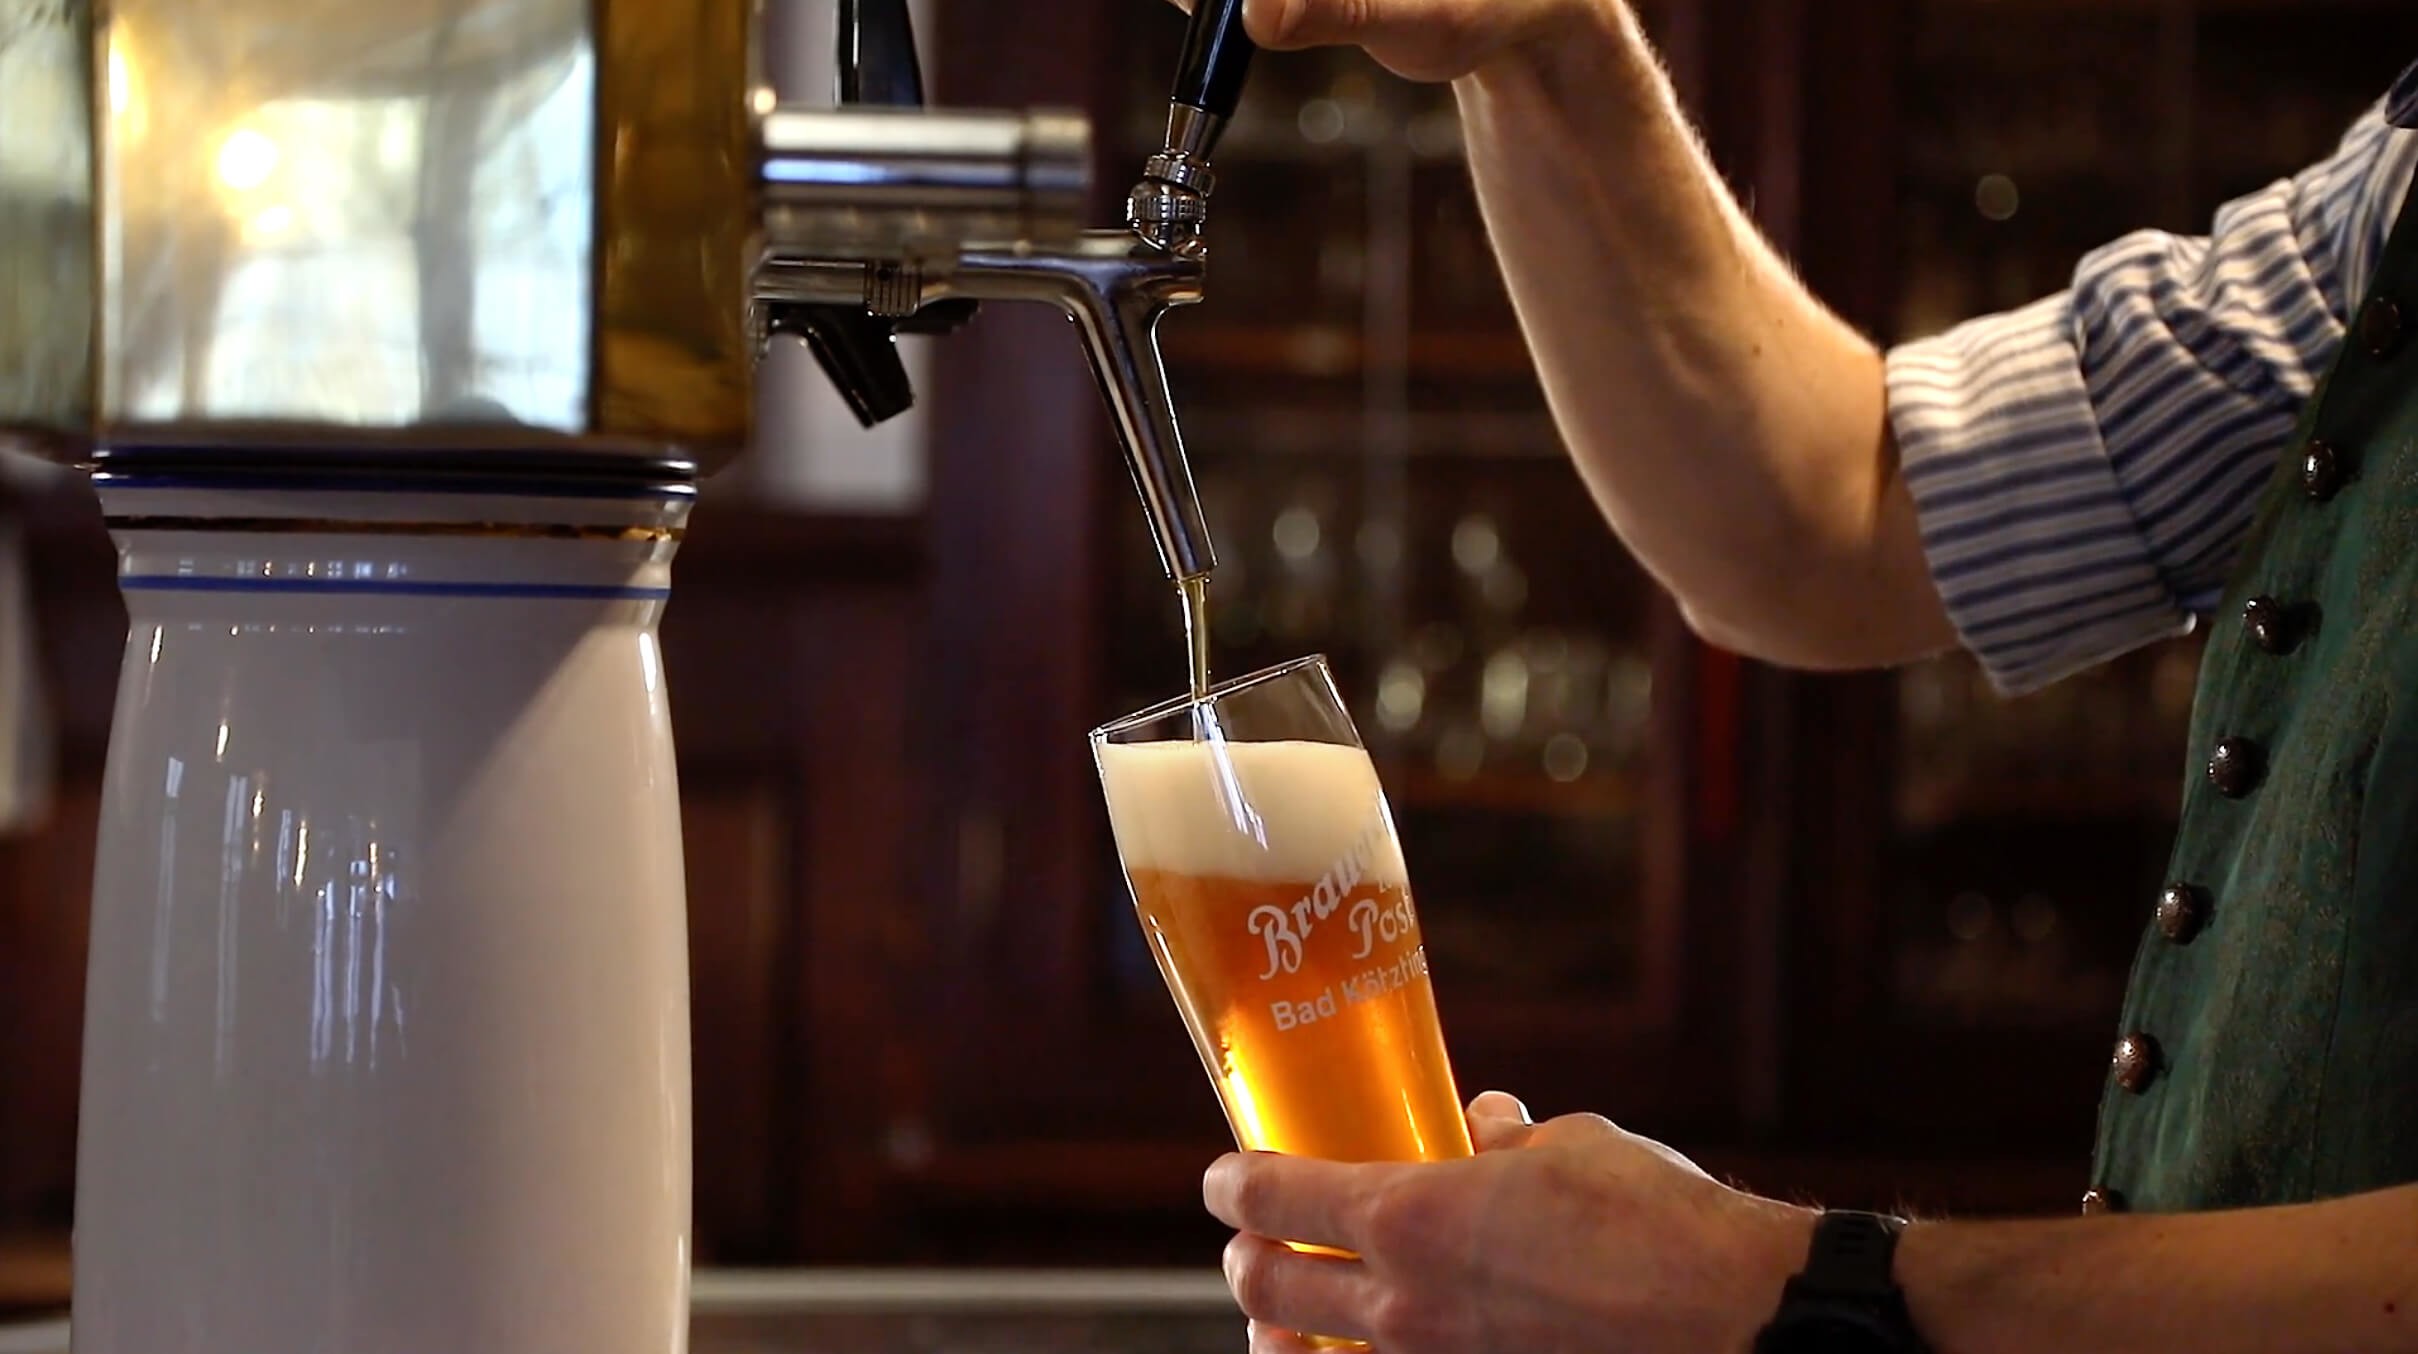 Brauerei - Bier wird frisch gezapft